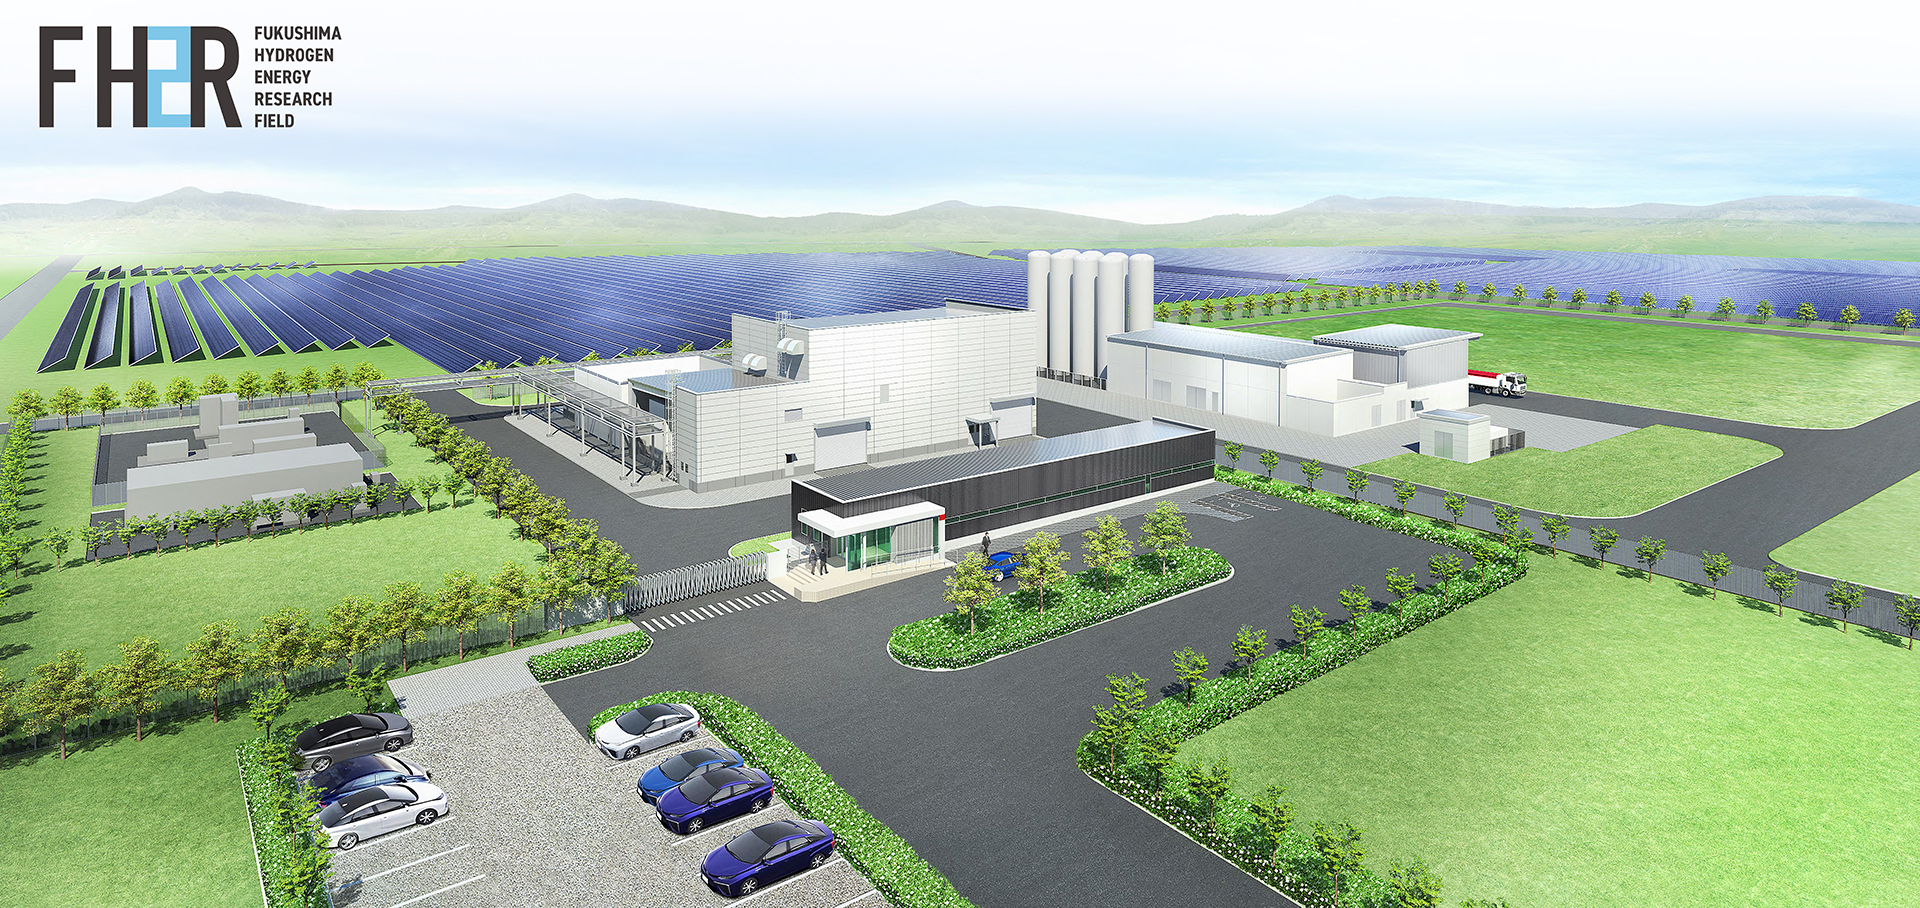 図1　福島水素エネルギー研究フィールド完成イメージ